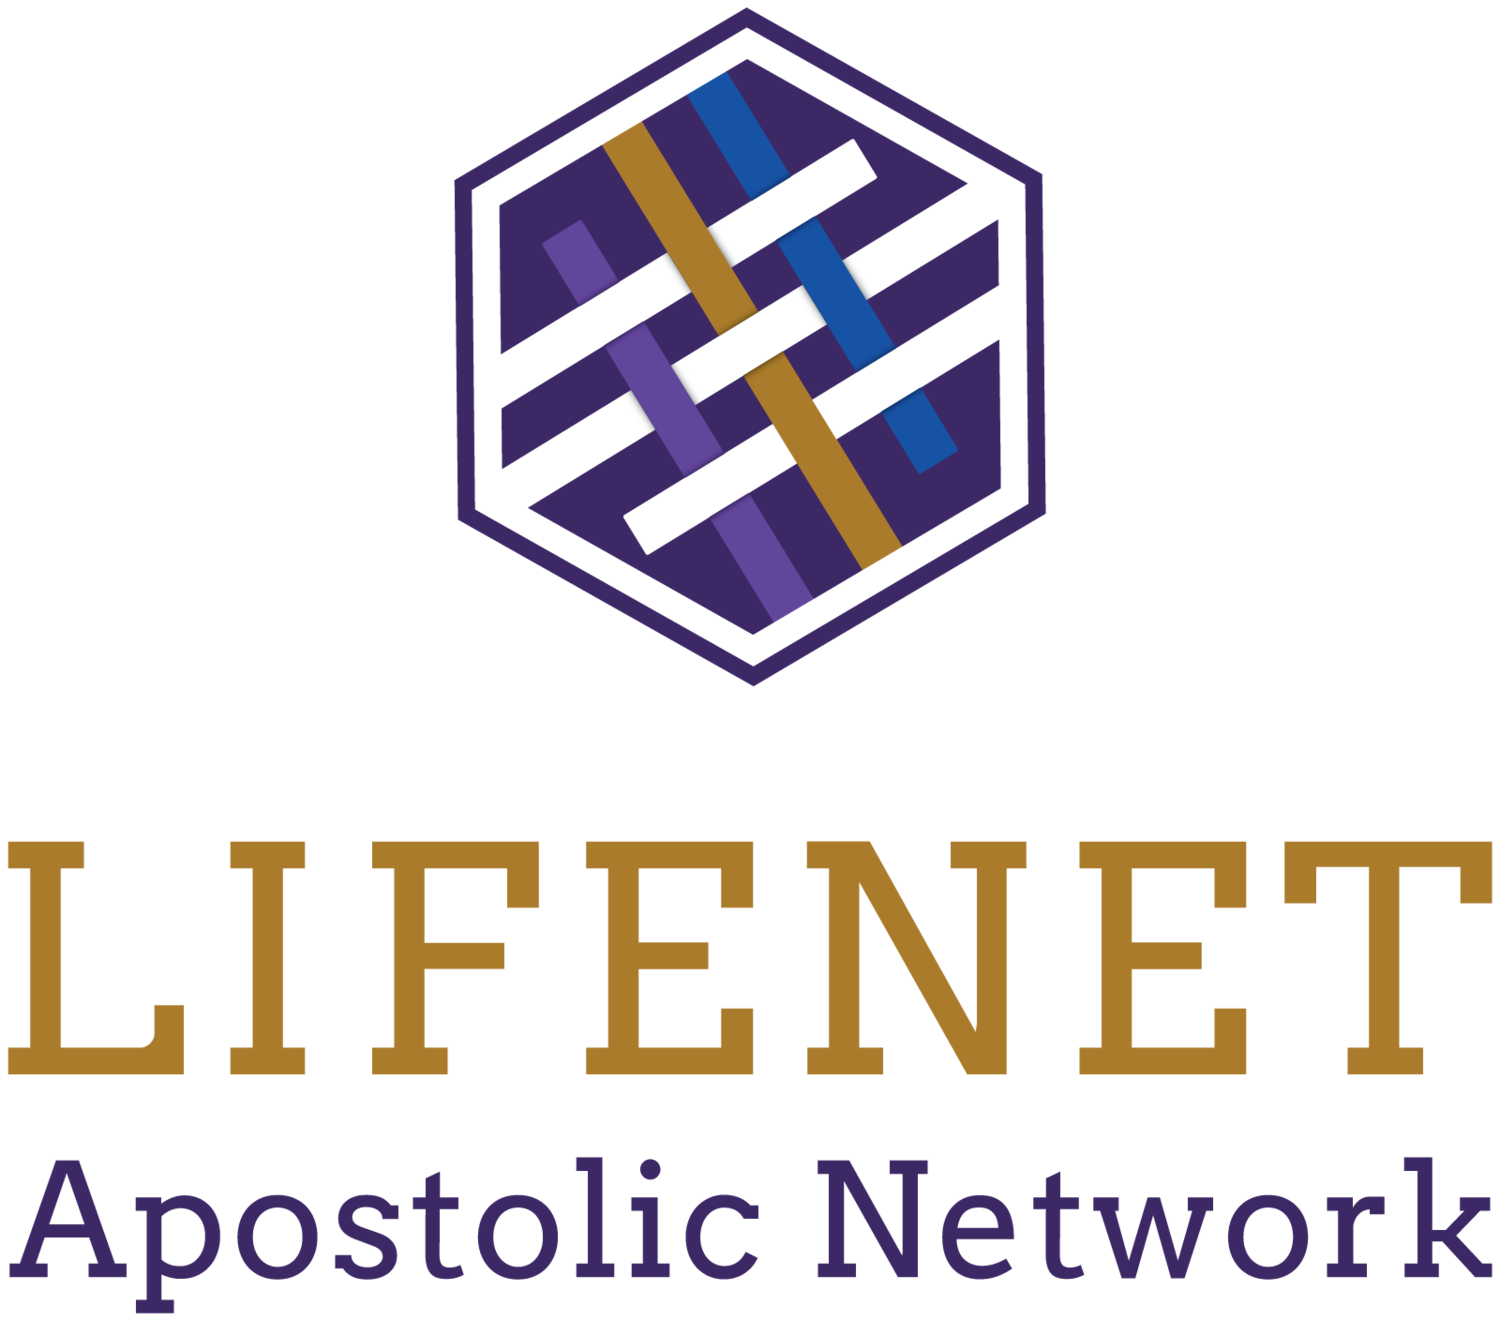 Lifenet Apostolic Network